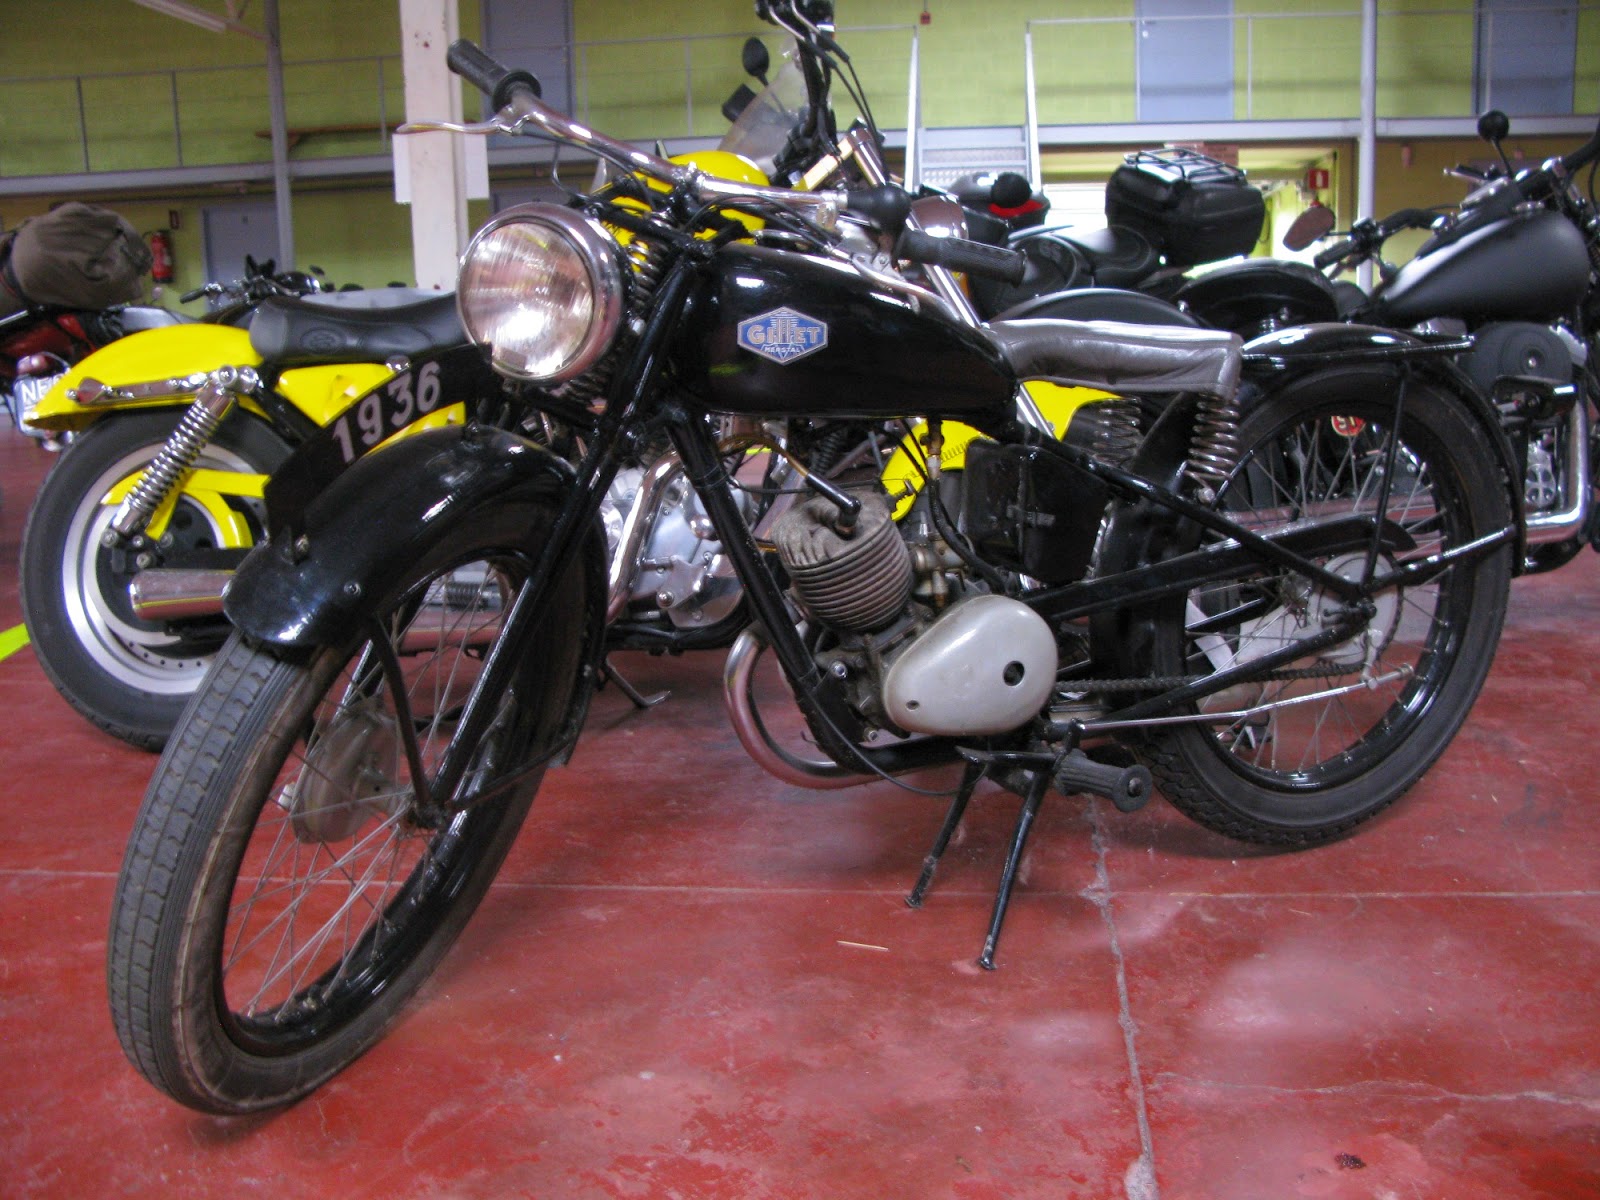 Gillet Herstal motorcycle